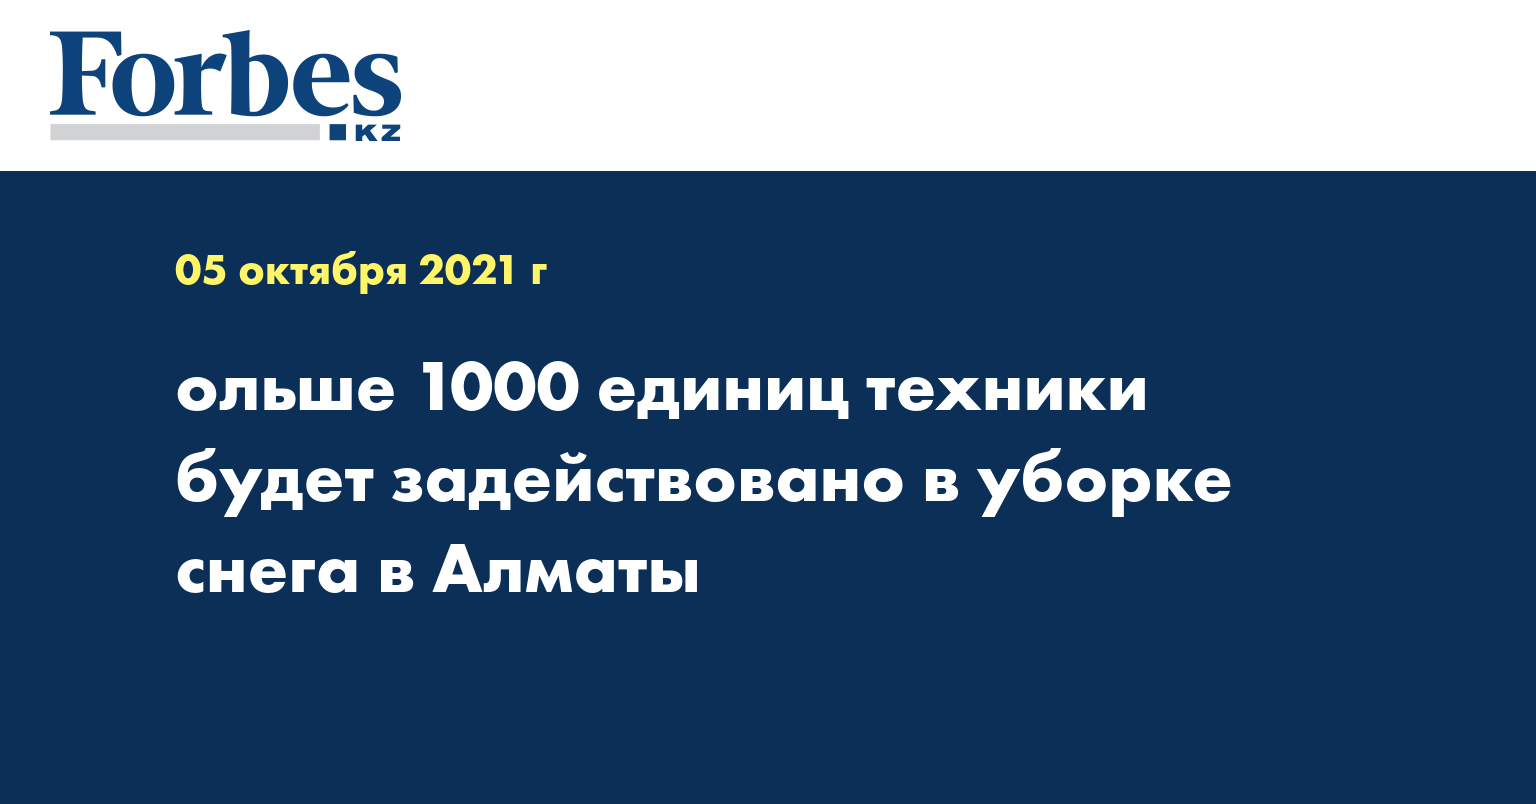 ольше 1000 единиц техники будет задействовано в уборке снега в Алматы